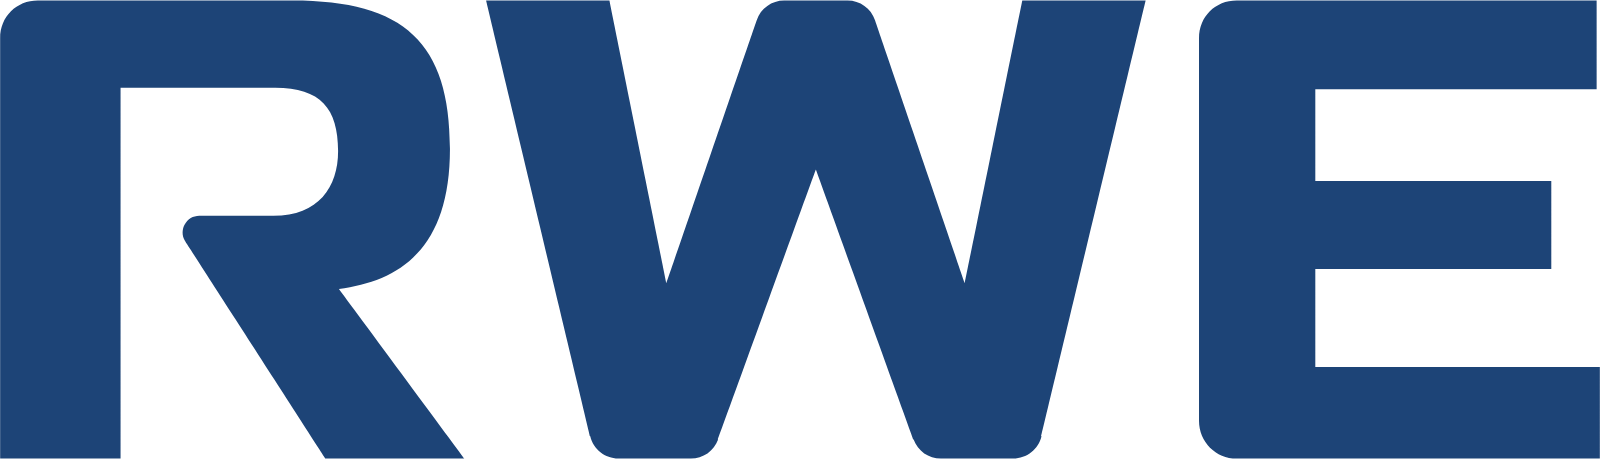 RWE logo (PNG transparent)